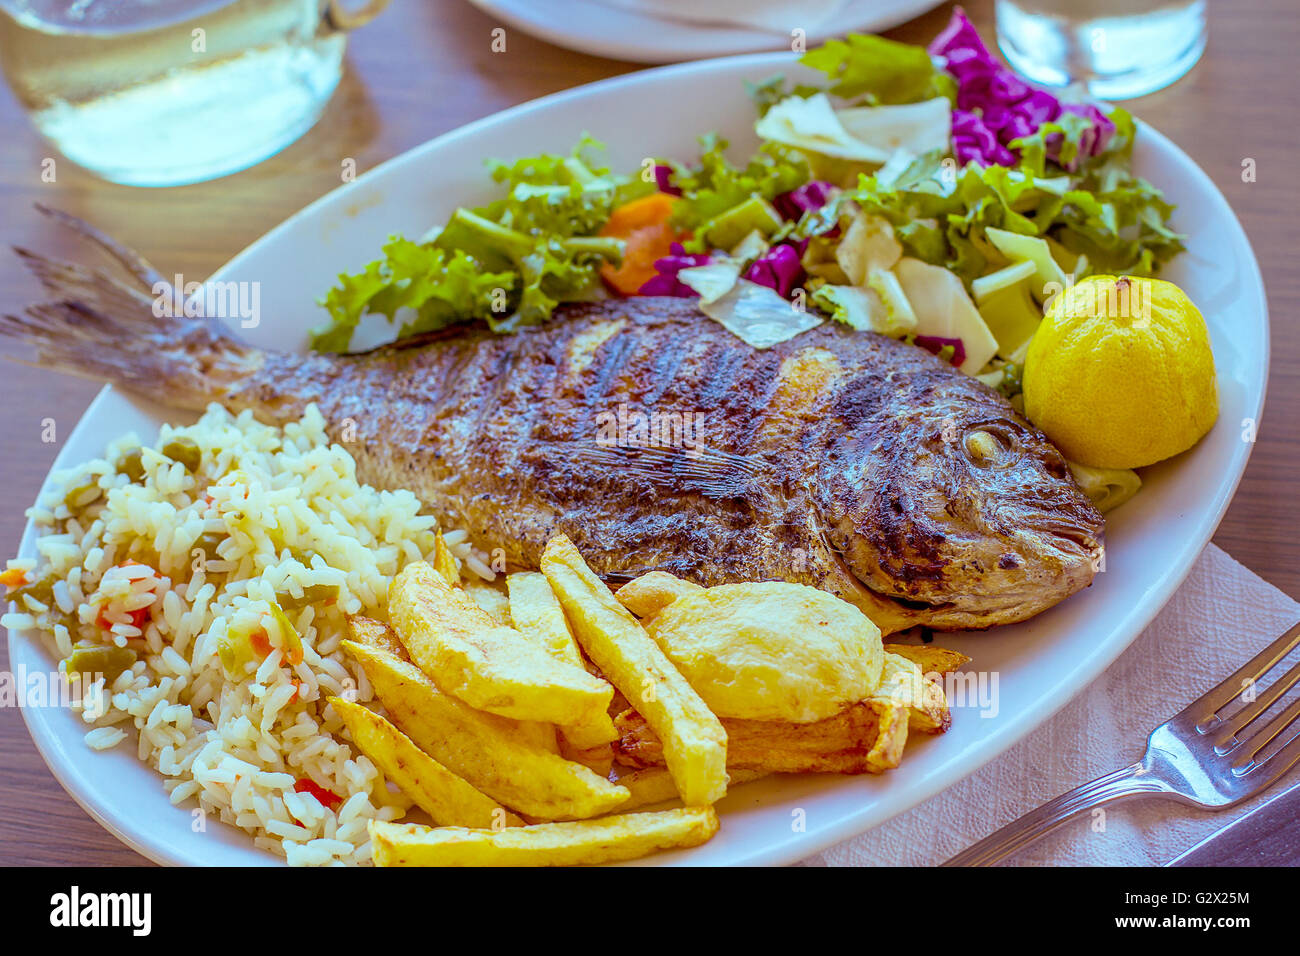 Dorade avec pomme de terre, riz et salade, méditerranéenne Banque D'Images